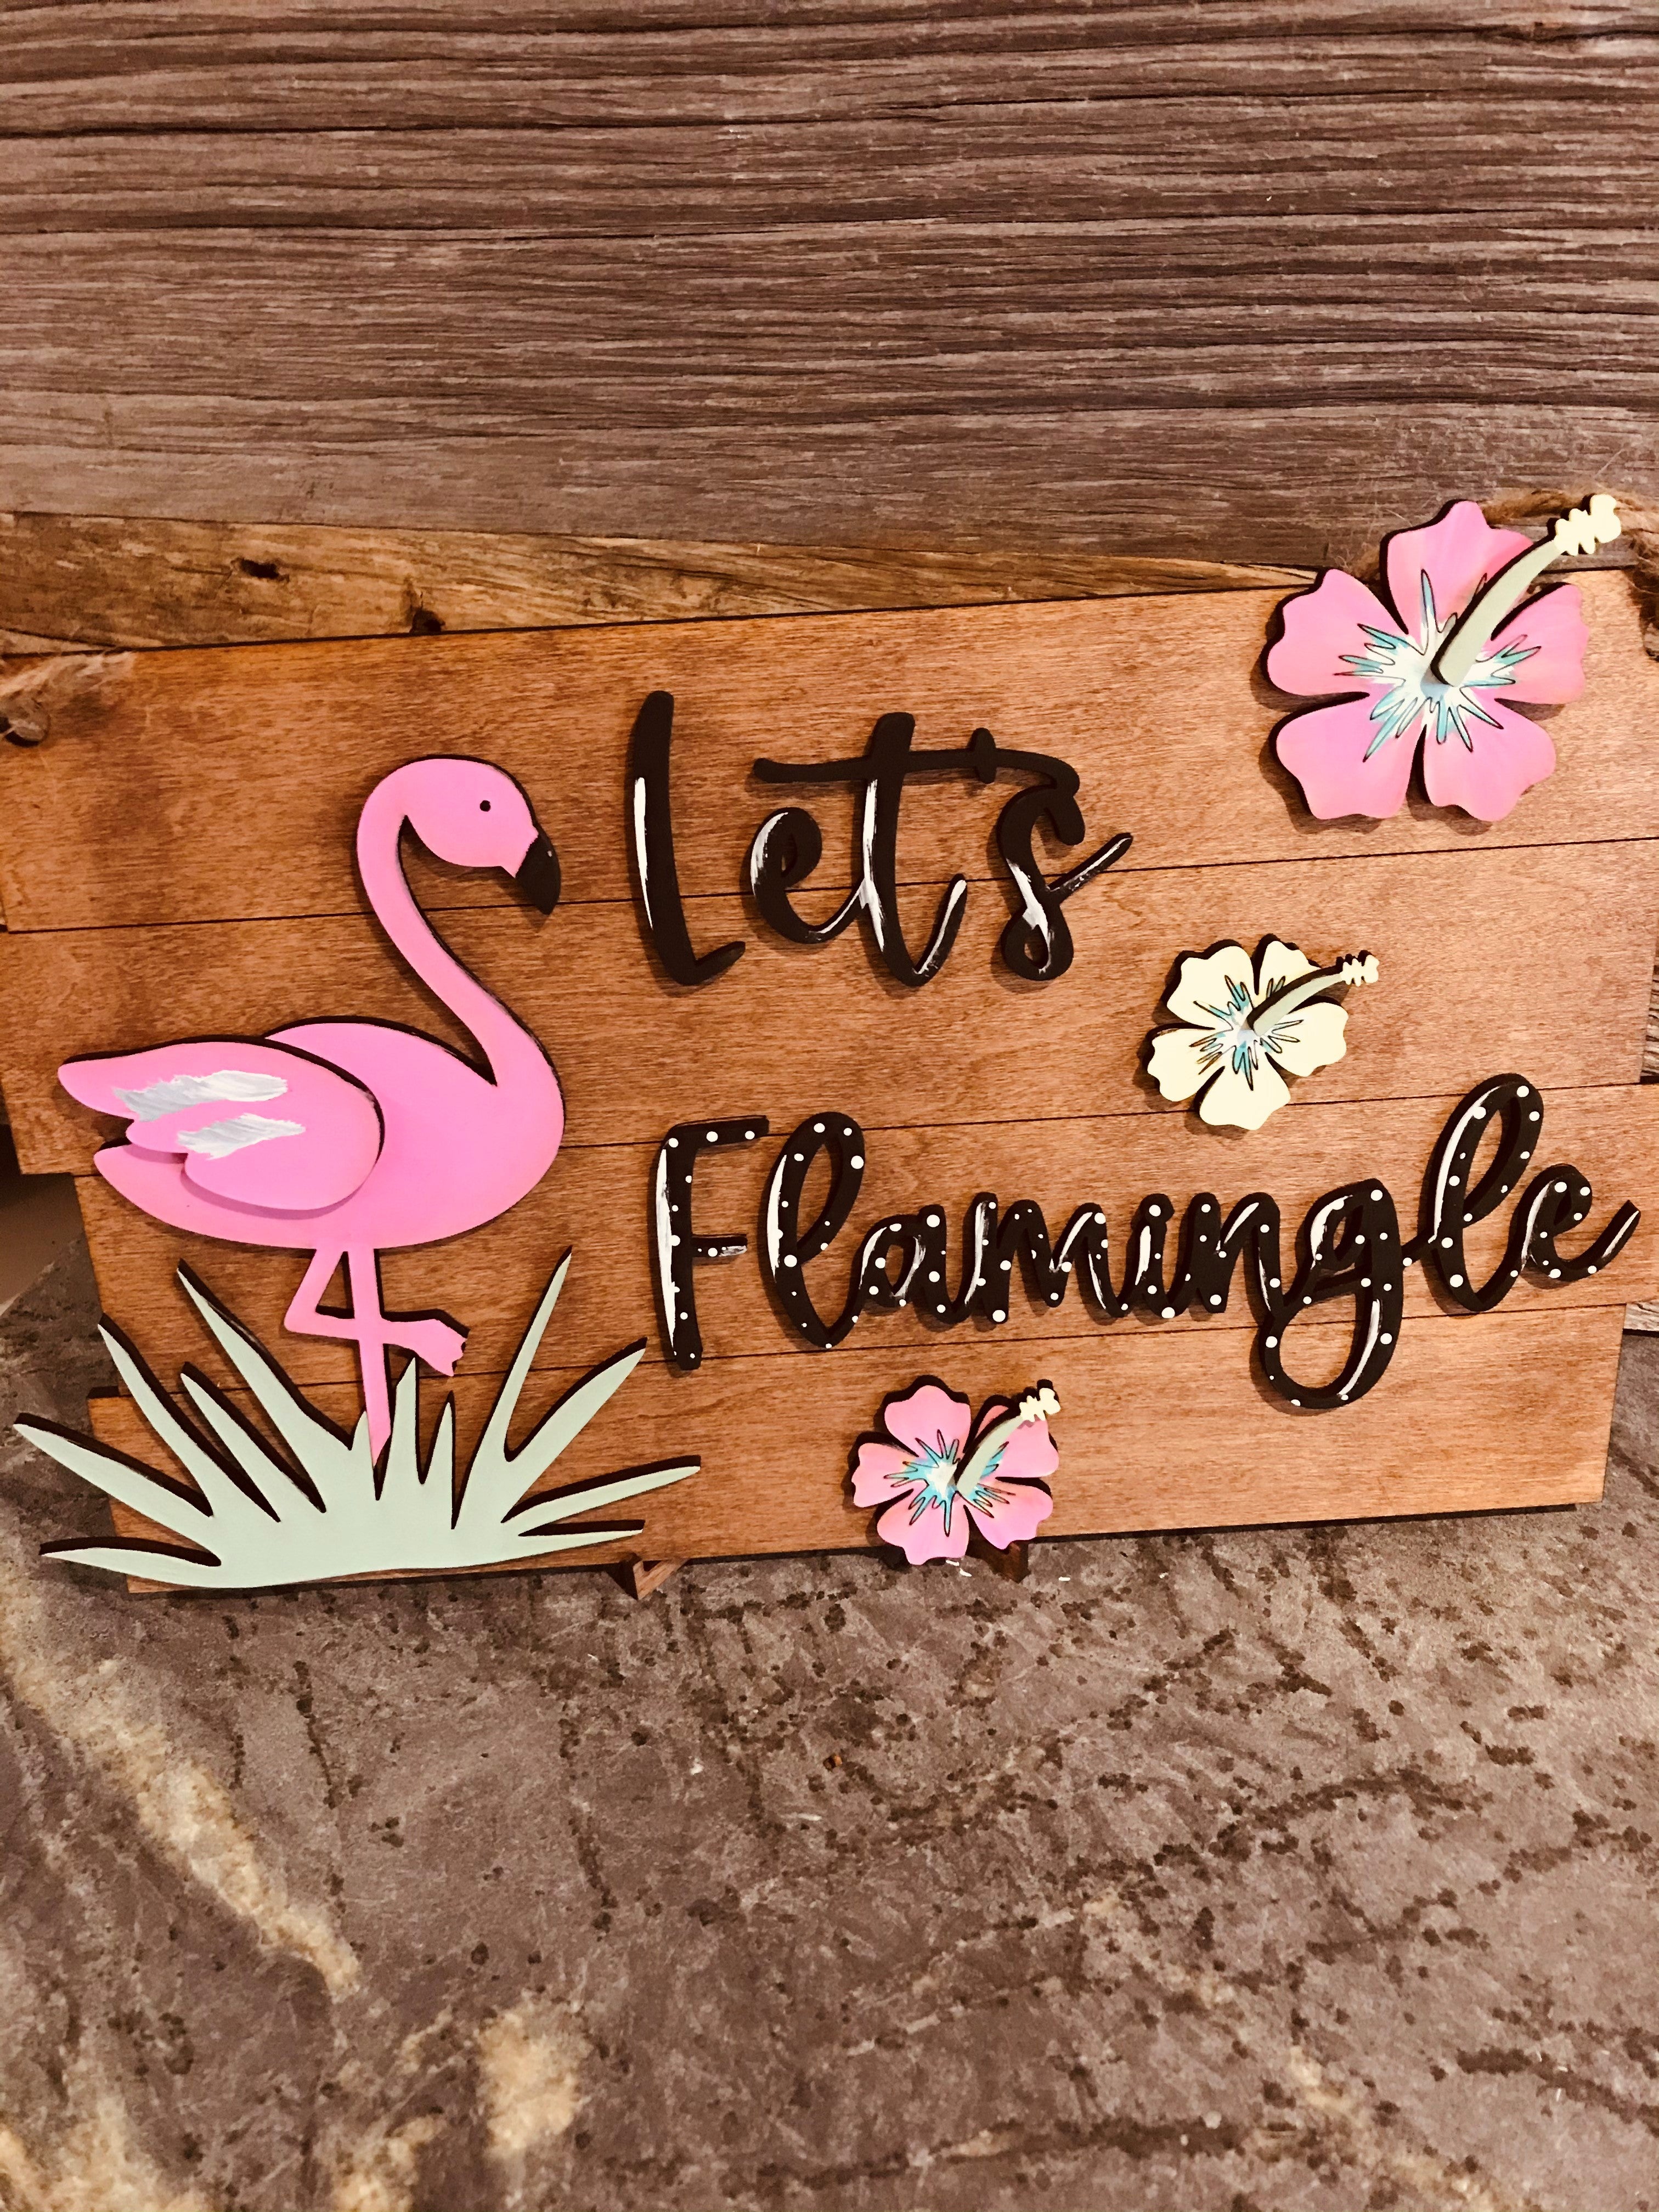 The Flamingle!